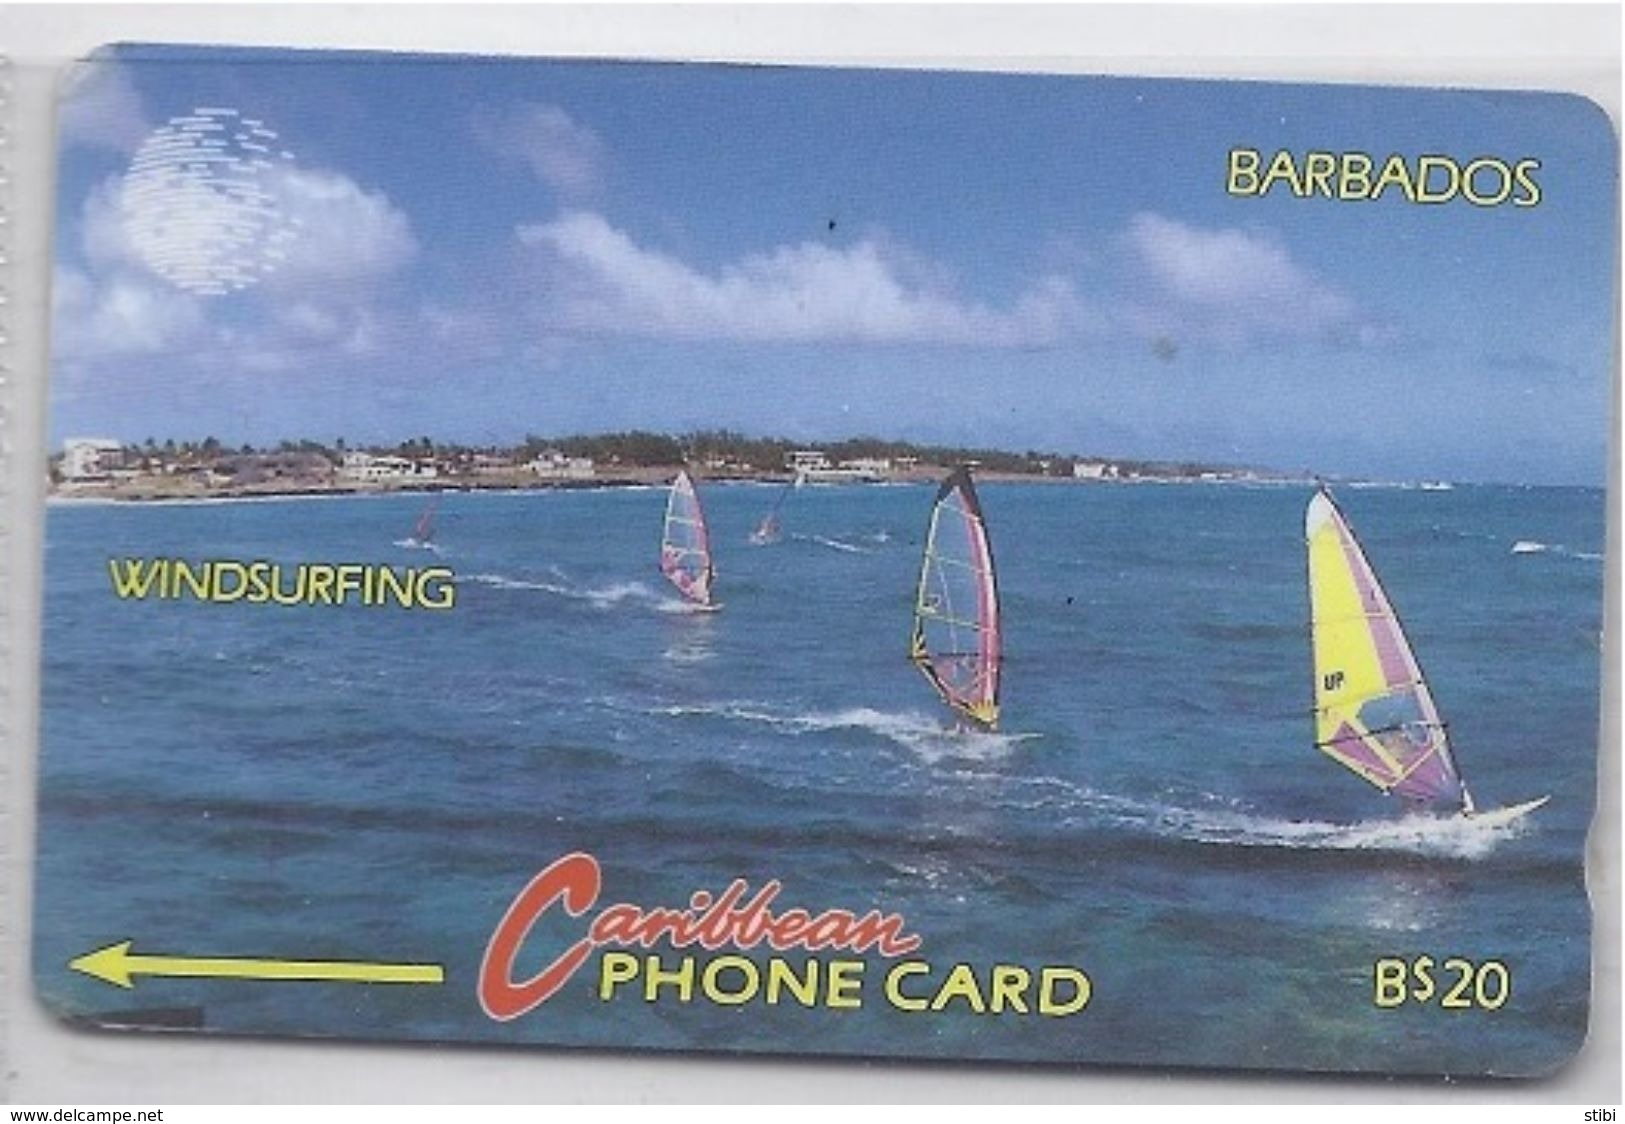 BARBADOS - WINDSURFING - 12CBDB - Barbados